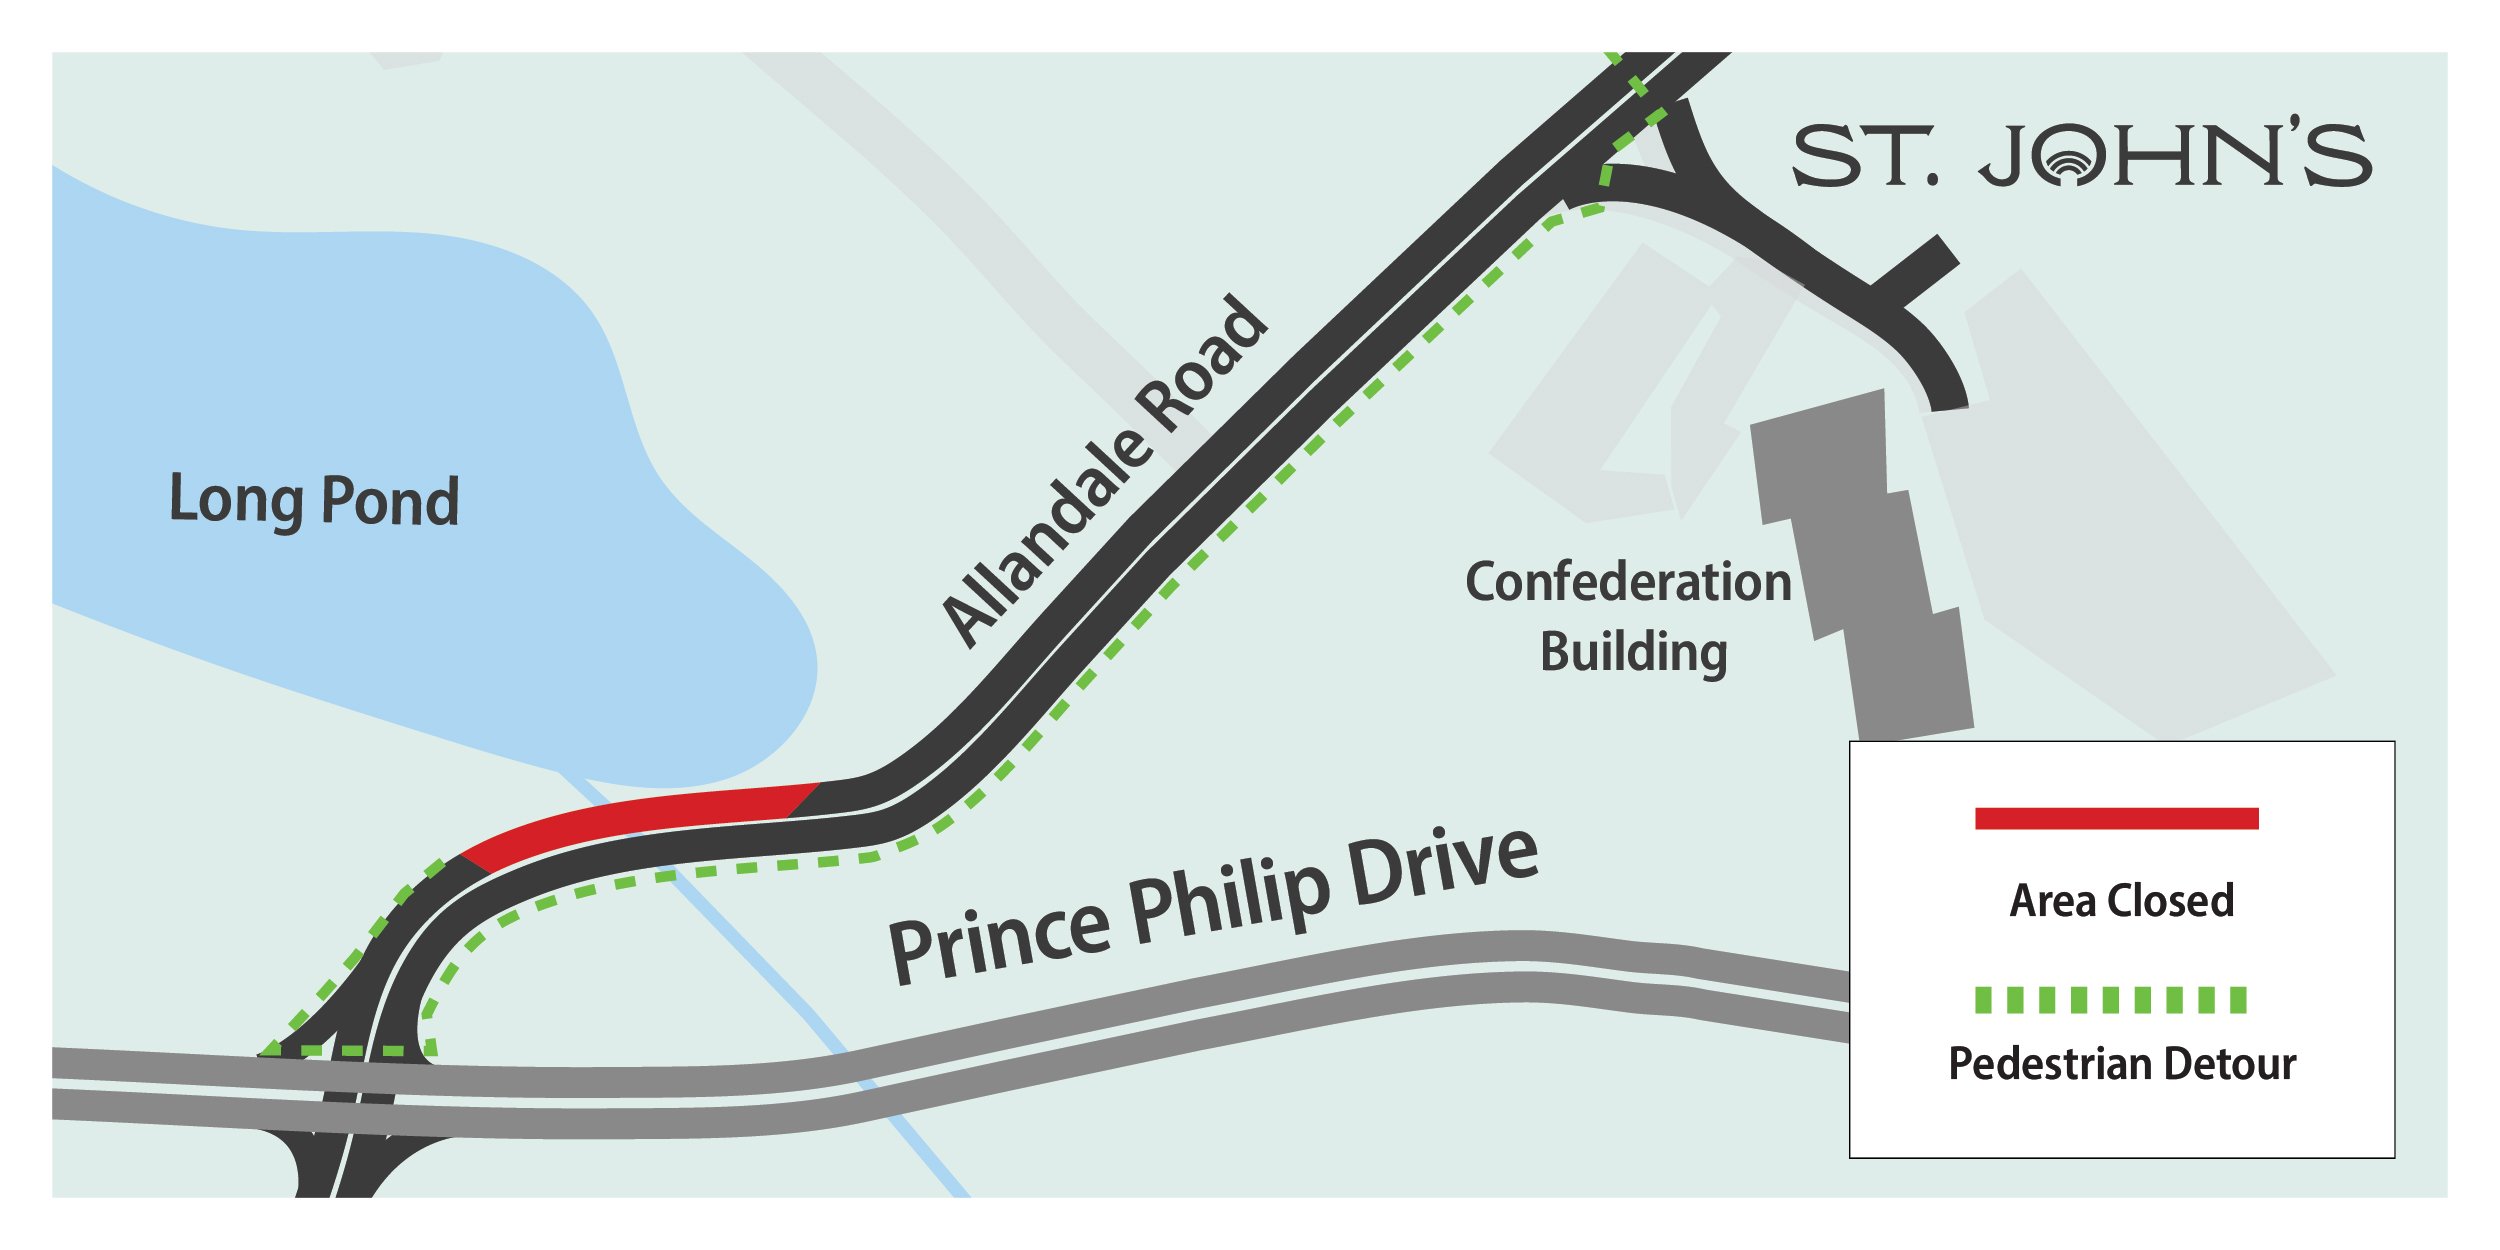 A graphic depicting a pedestrian detour at Allandale Road